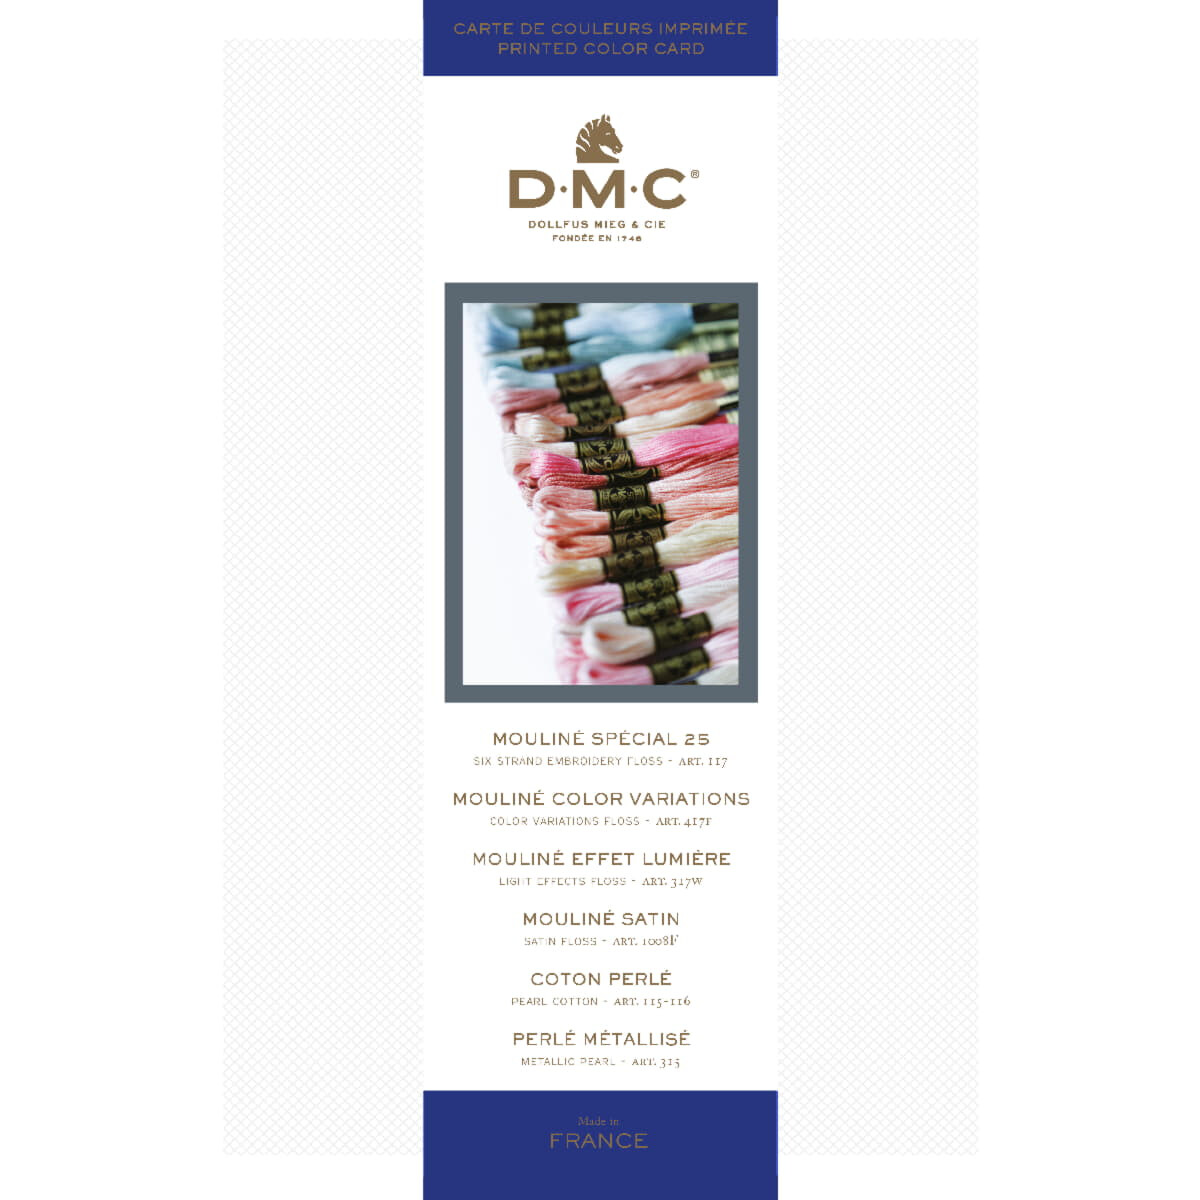 DMC cartella colori stampata di filati mouline e perlati...